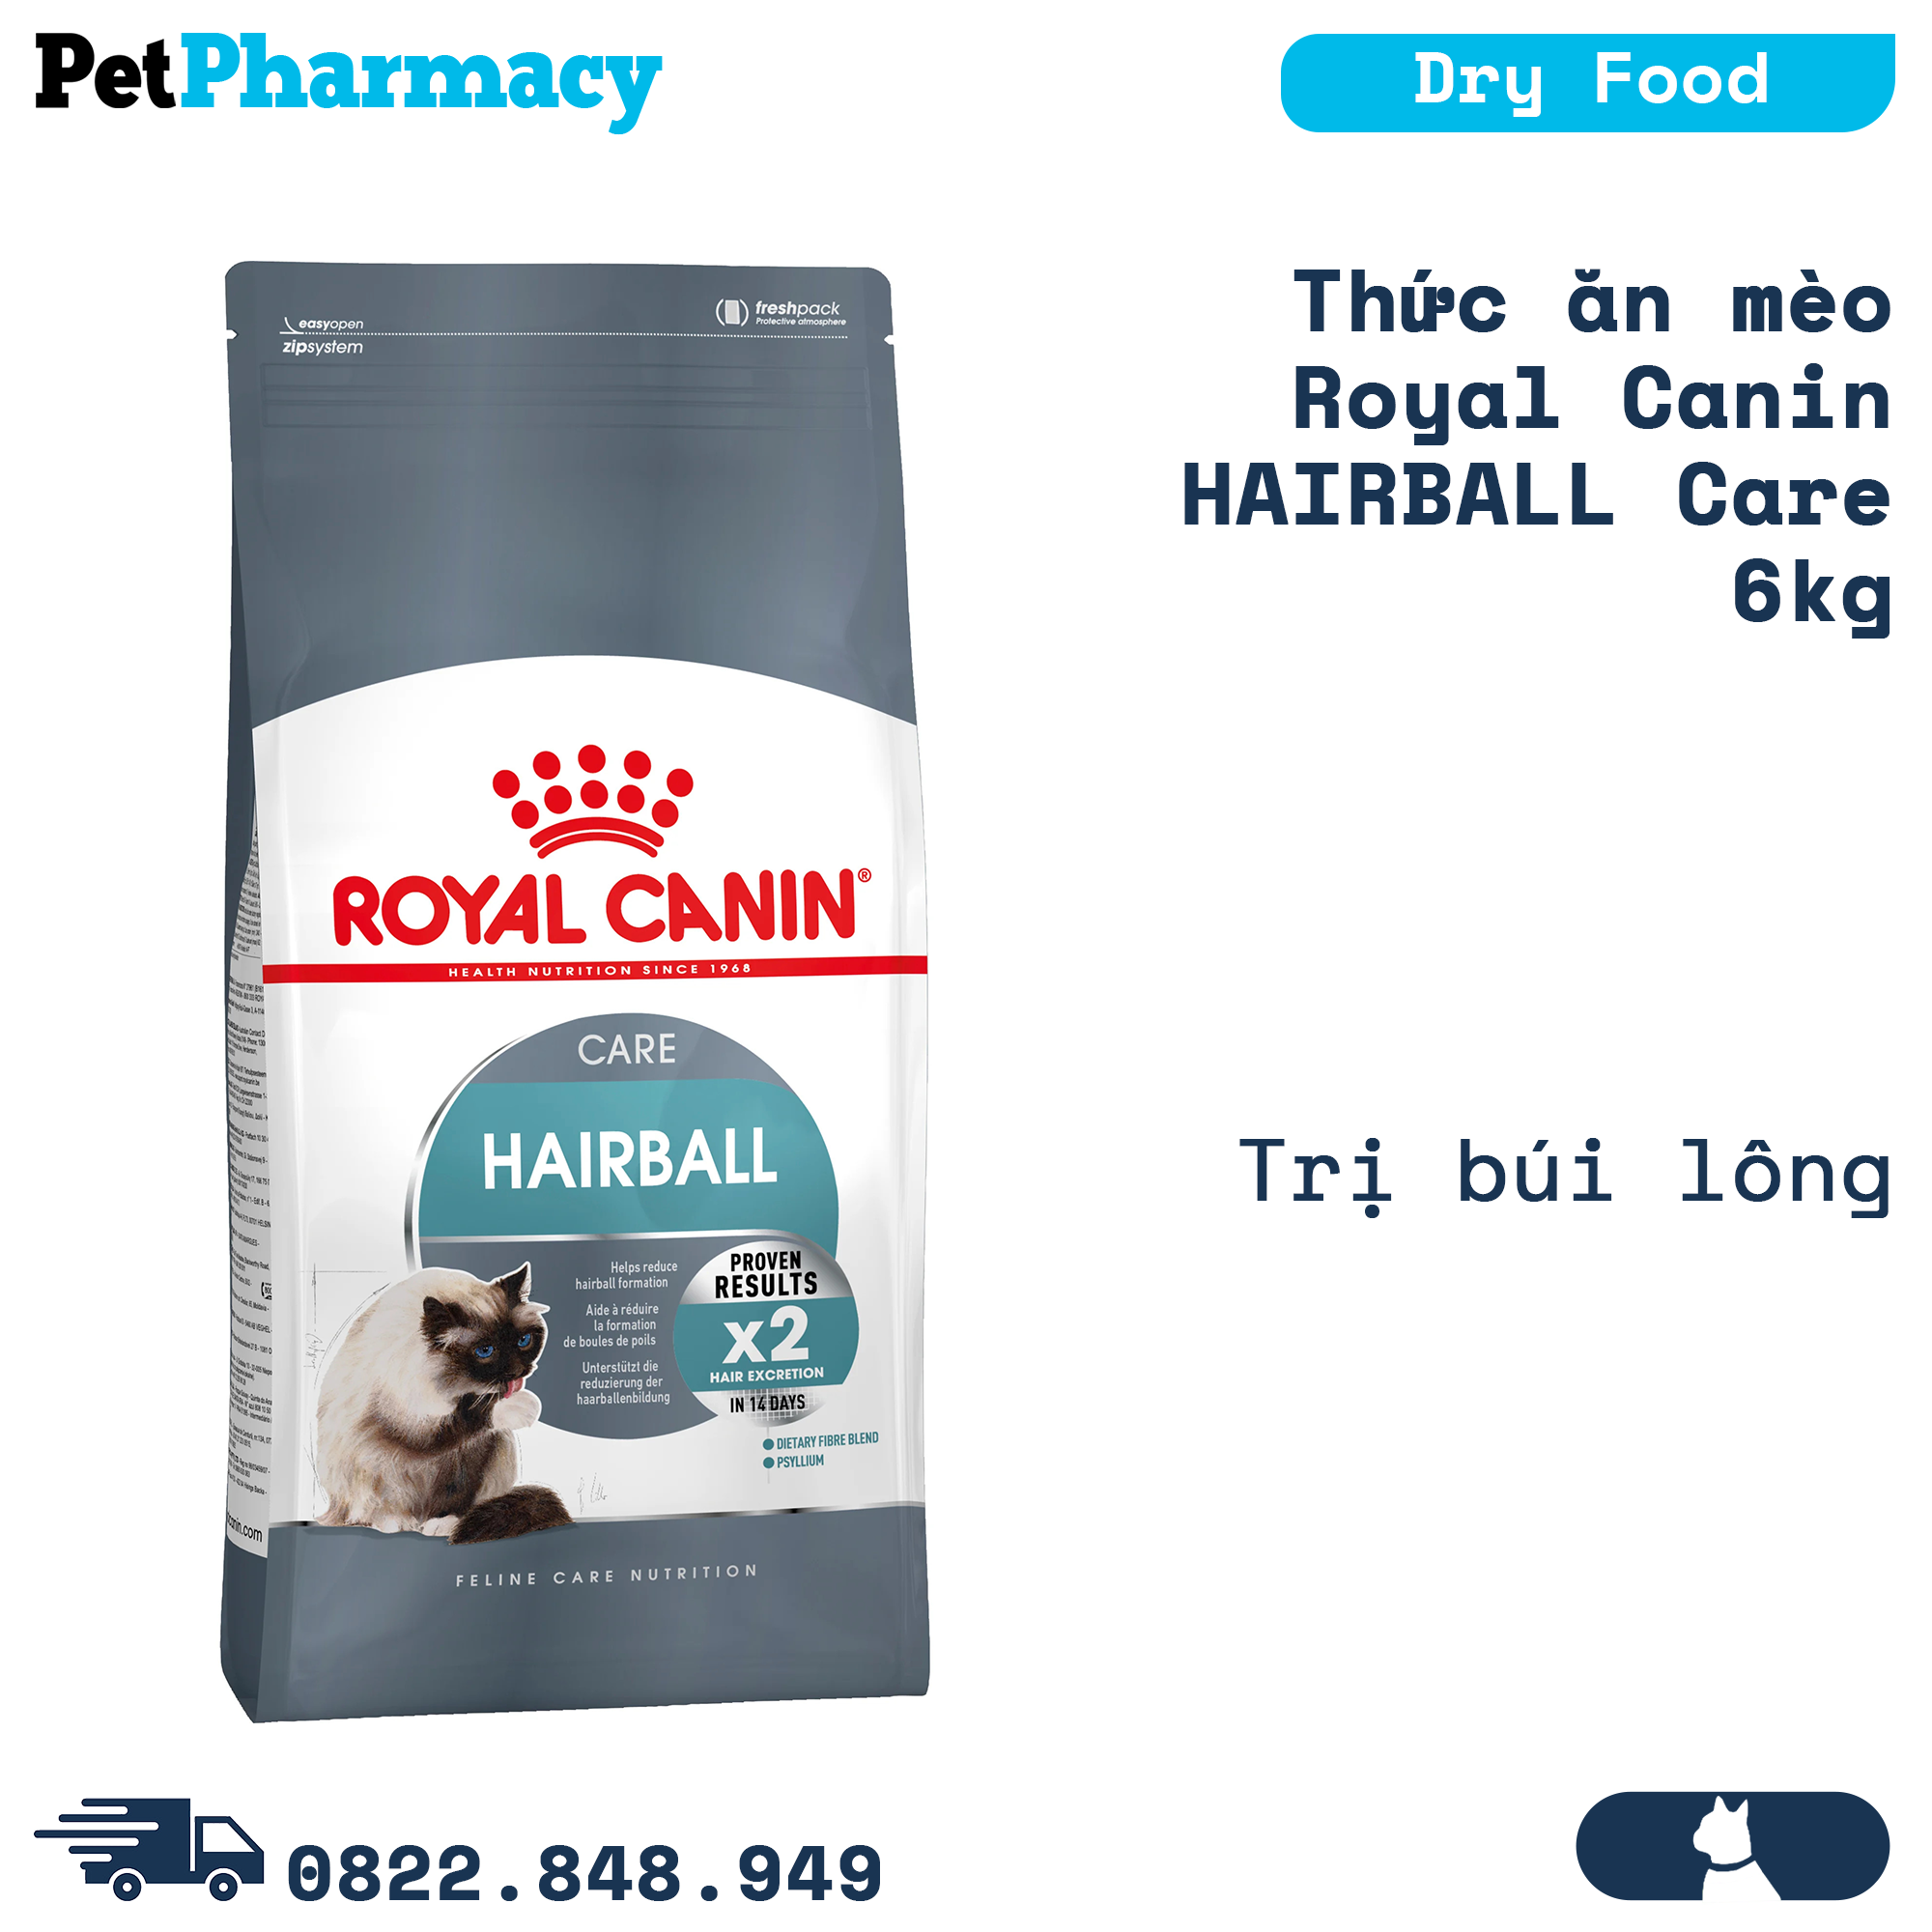 Thức ăn mèo Royal Canin HAIRBALL Care 6kg - Trị búi lông Petpharmacy